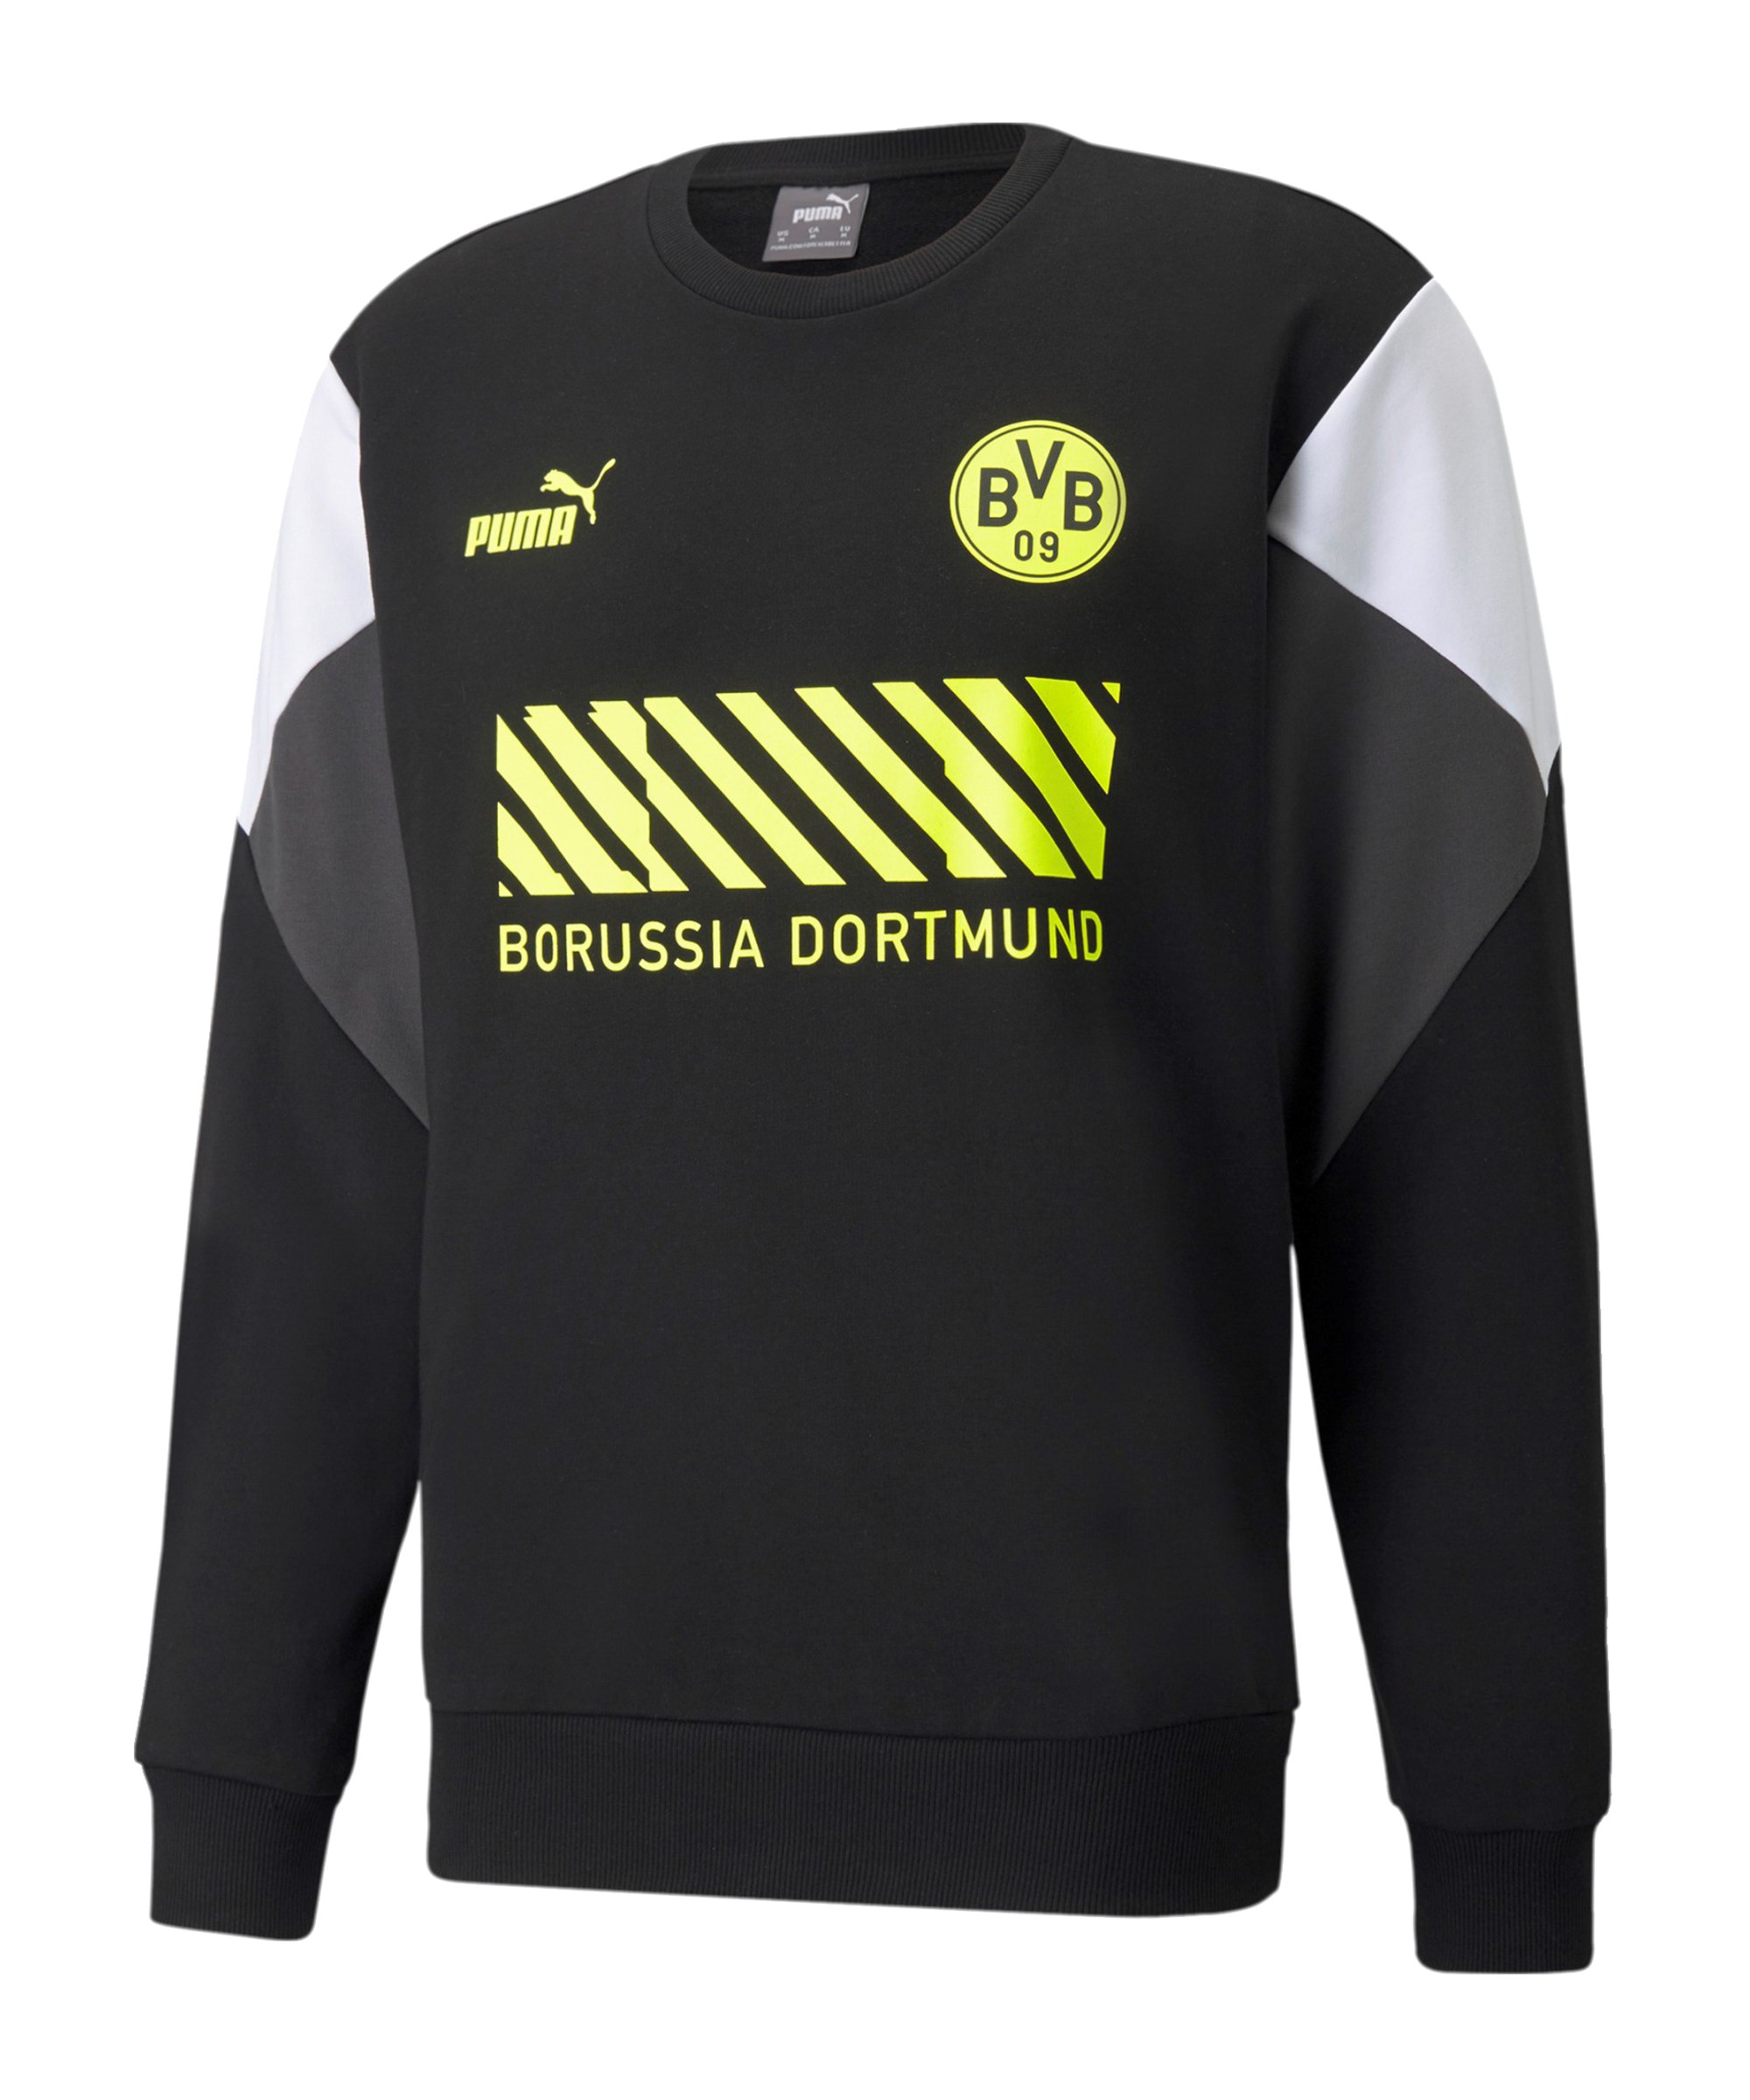 PUMA BVB Dortmund FtblCulture Crew Sweatshirt Schwarz Gelb F05 - schwarz